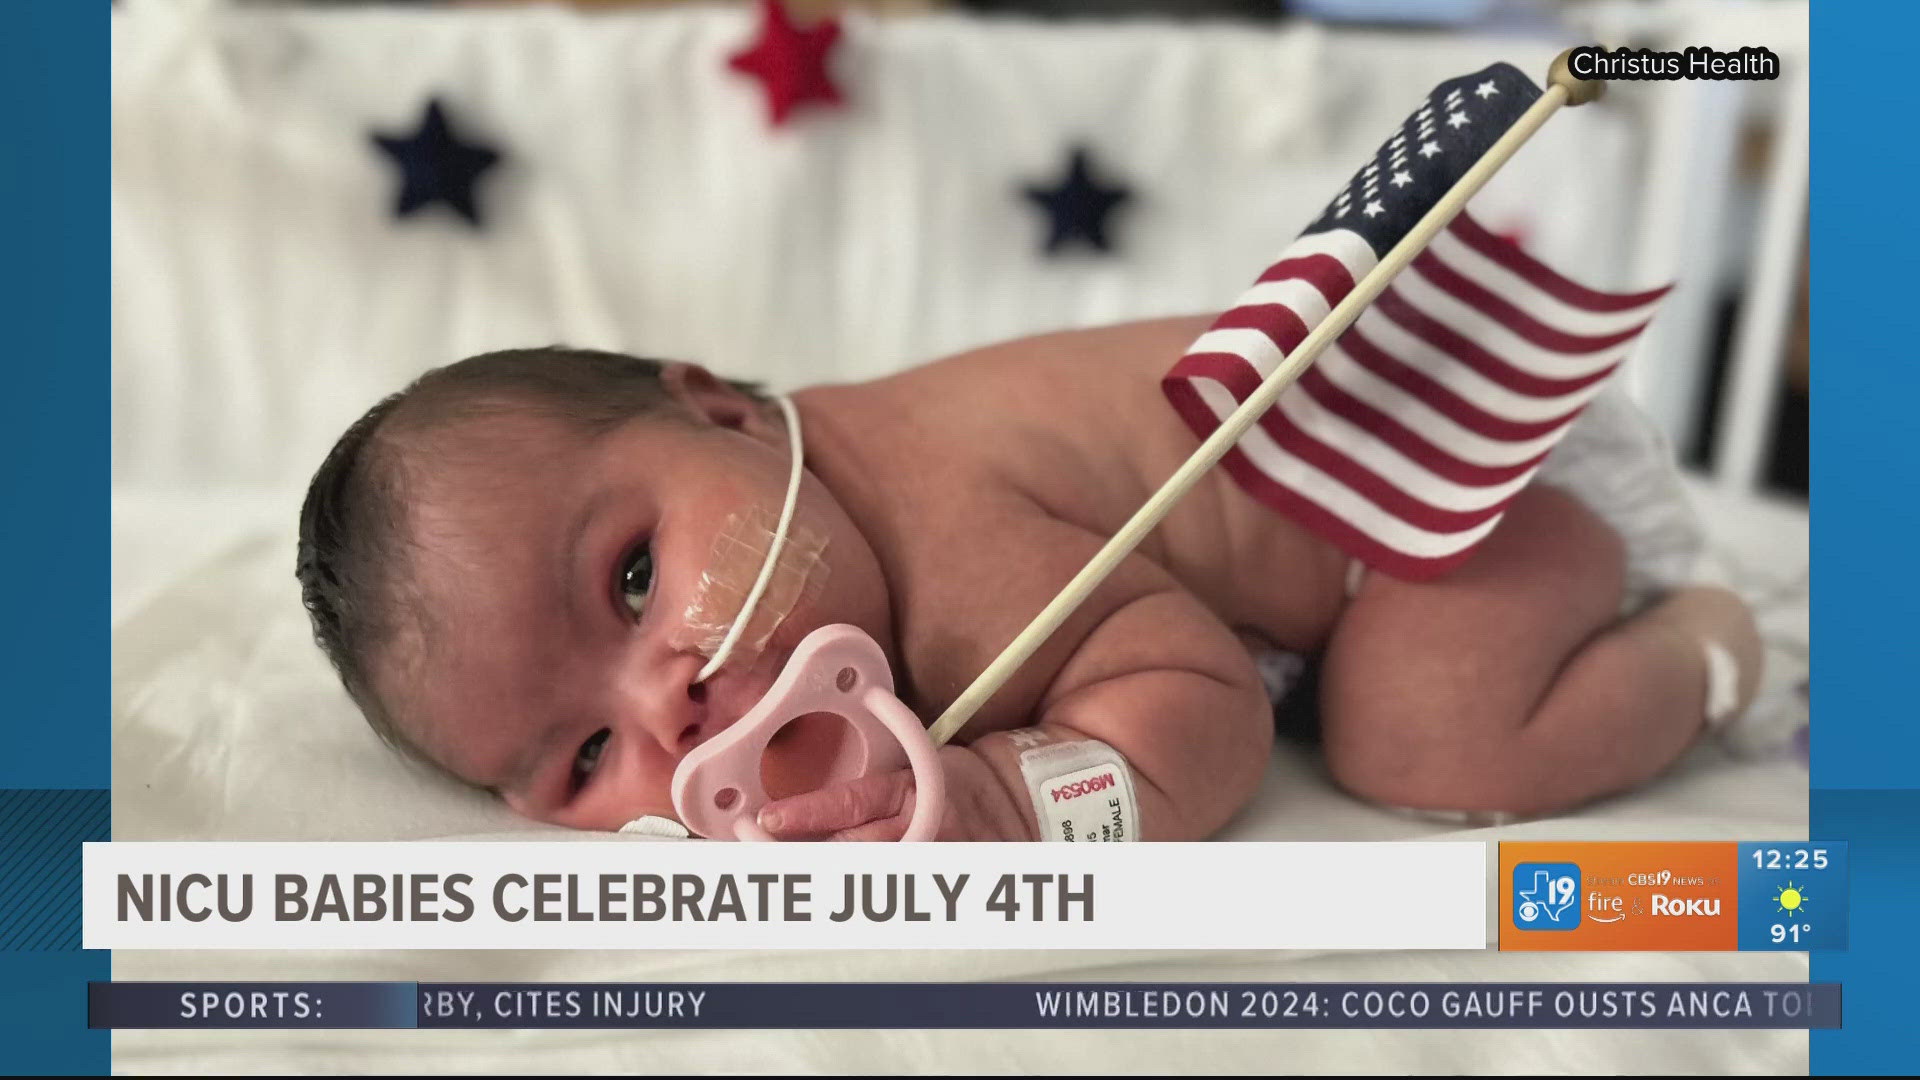 NICU babies celebrate July 4th